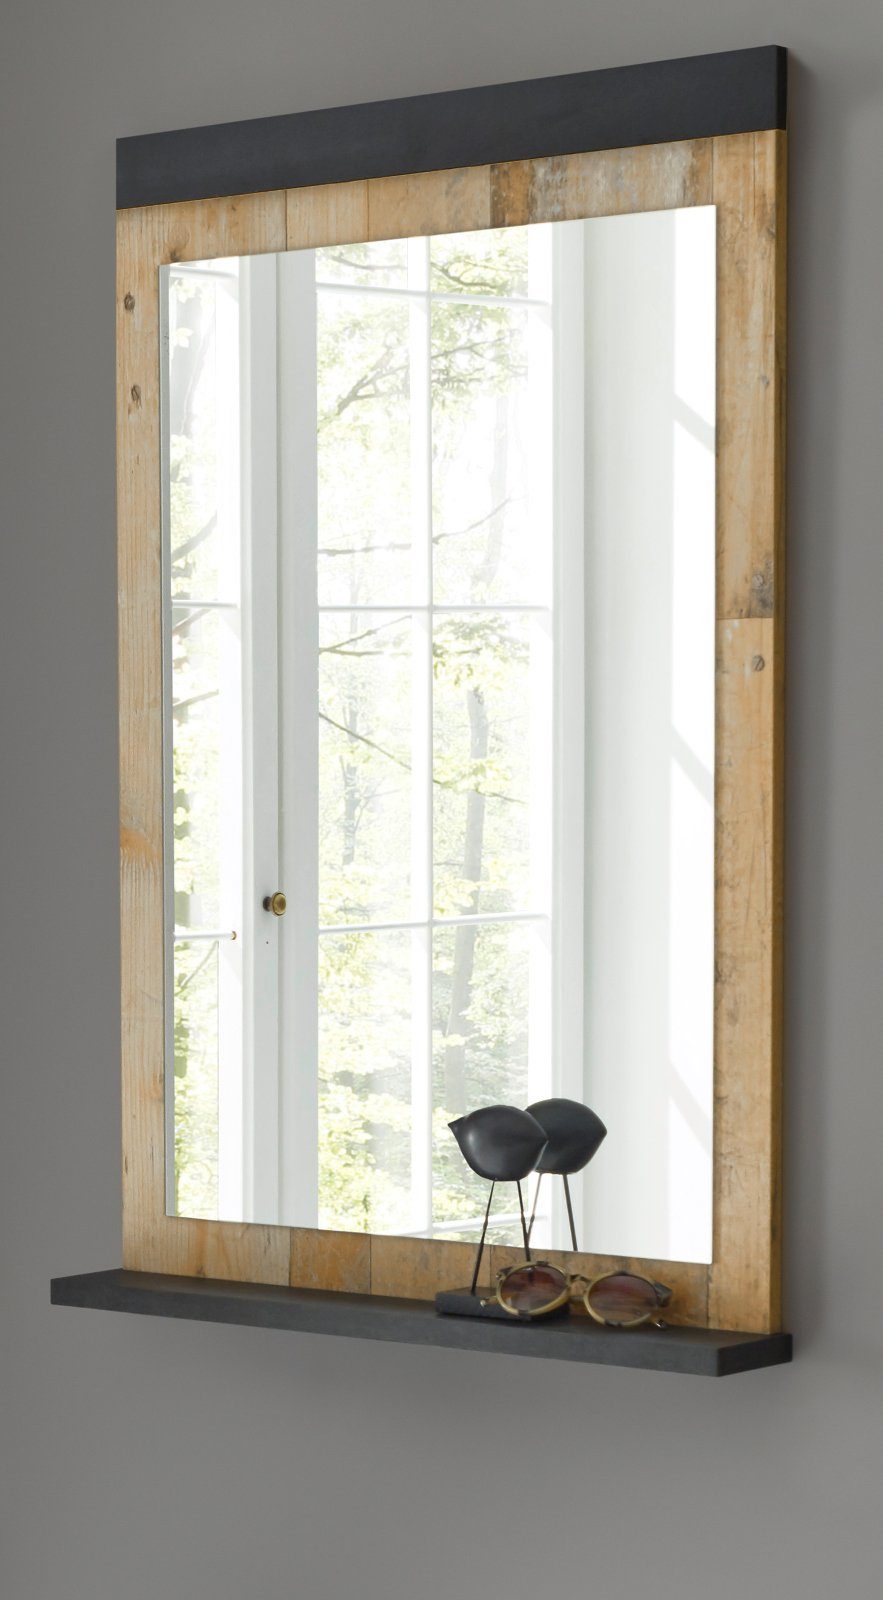 Furn.Design Garderobenspiegel Stove (Wandspiegel in Used Wood Vintage, 66 x 95 cm), mit Ablage